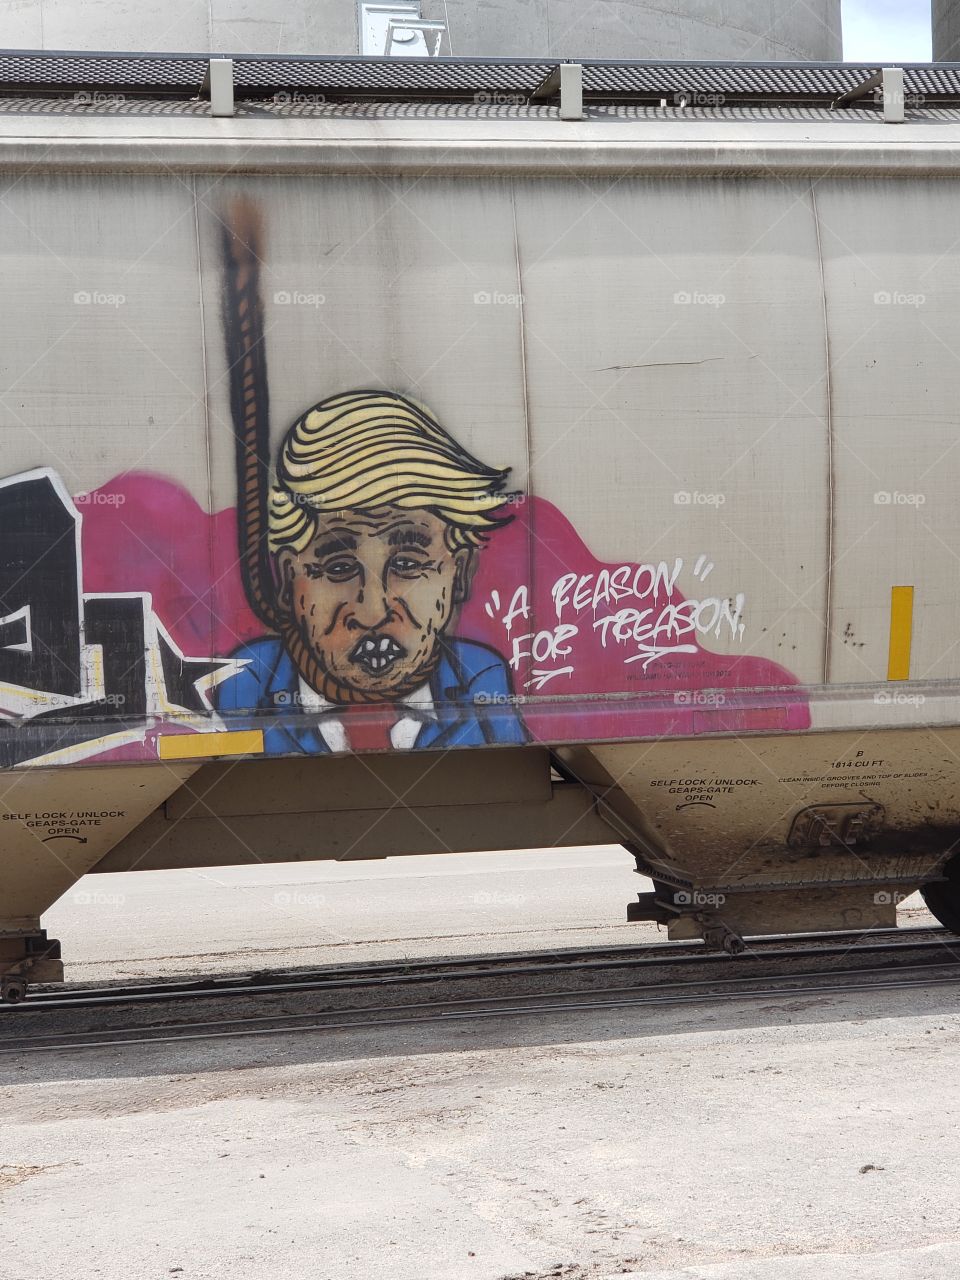 A reason for treason. Anti-Trump protest train car tagging. 2018